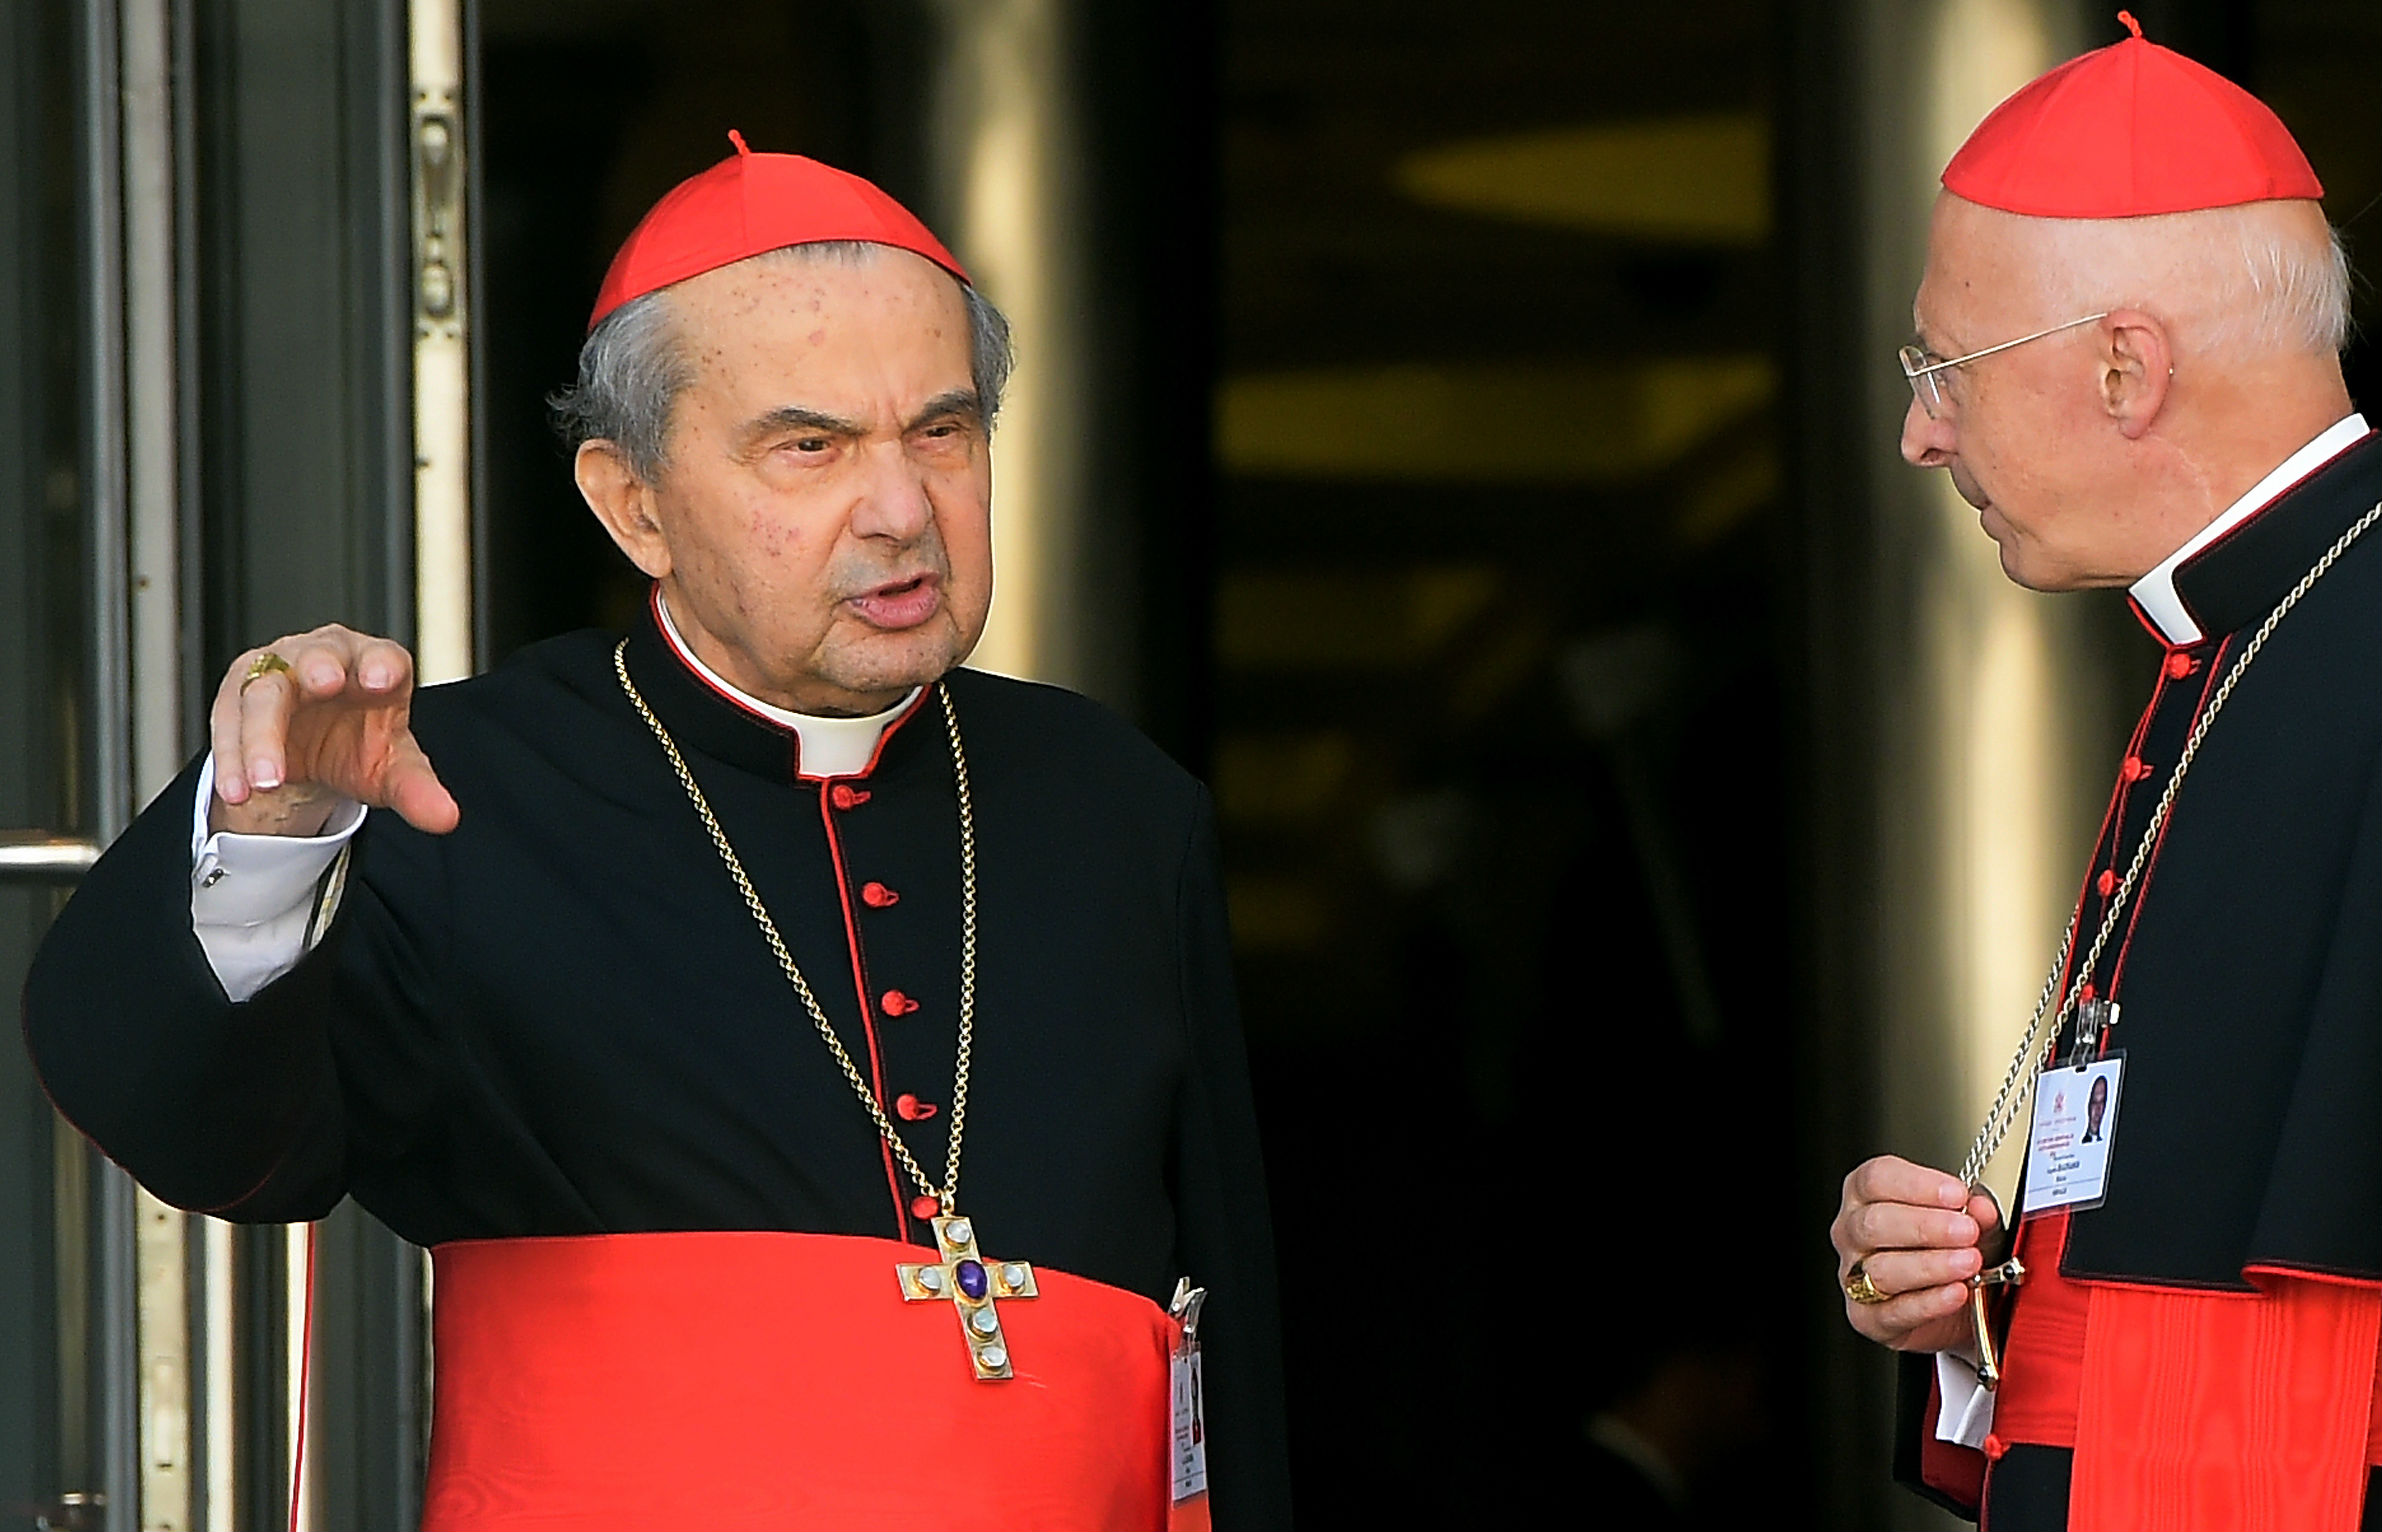  'Dubia' cardinal, Carlo Caffarra, dies aged 79 